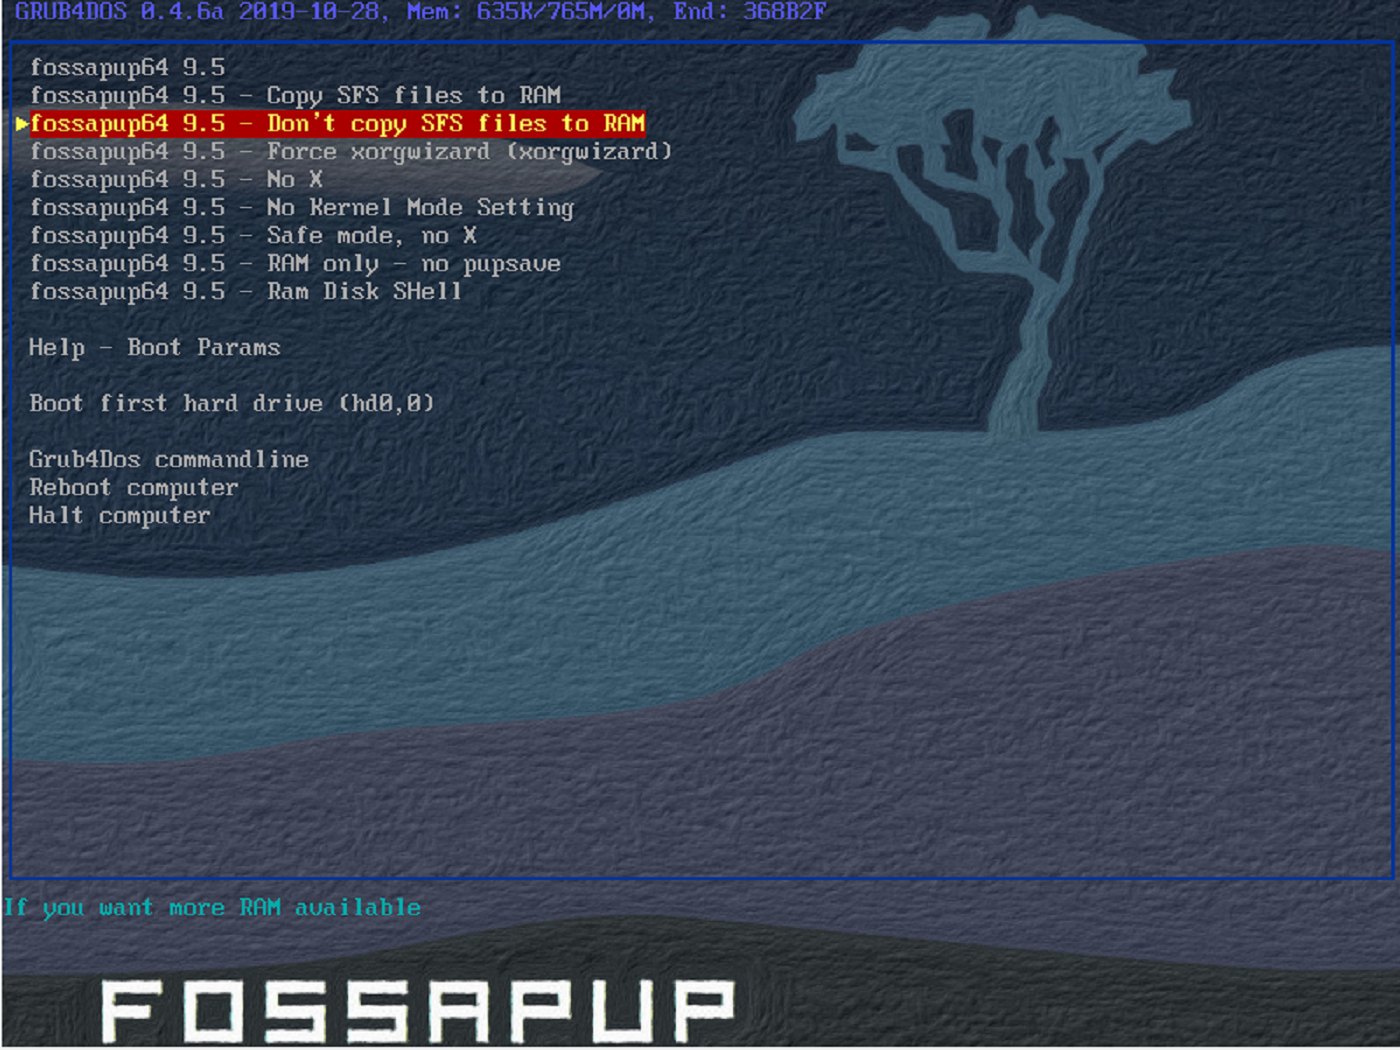 puppy linux fossapup 9.5 boot